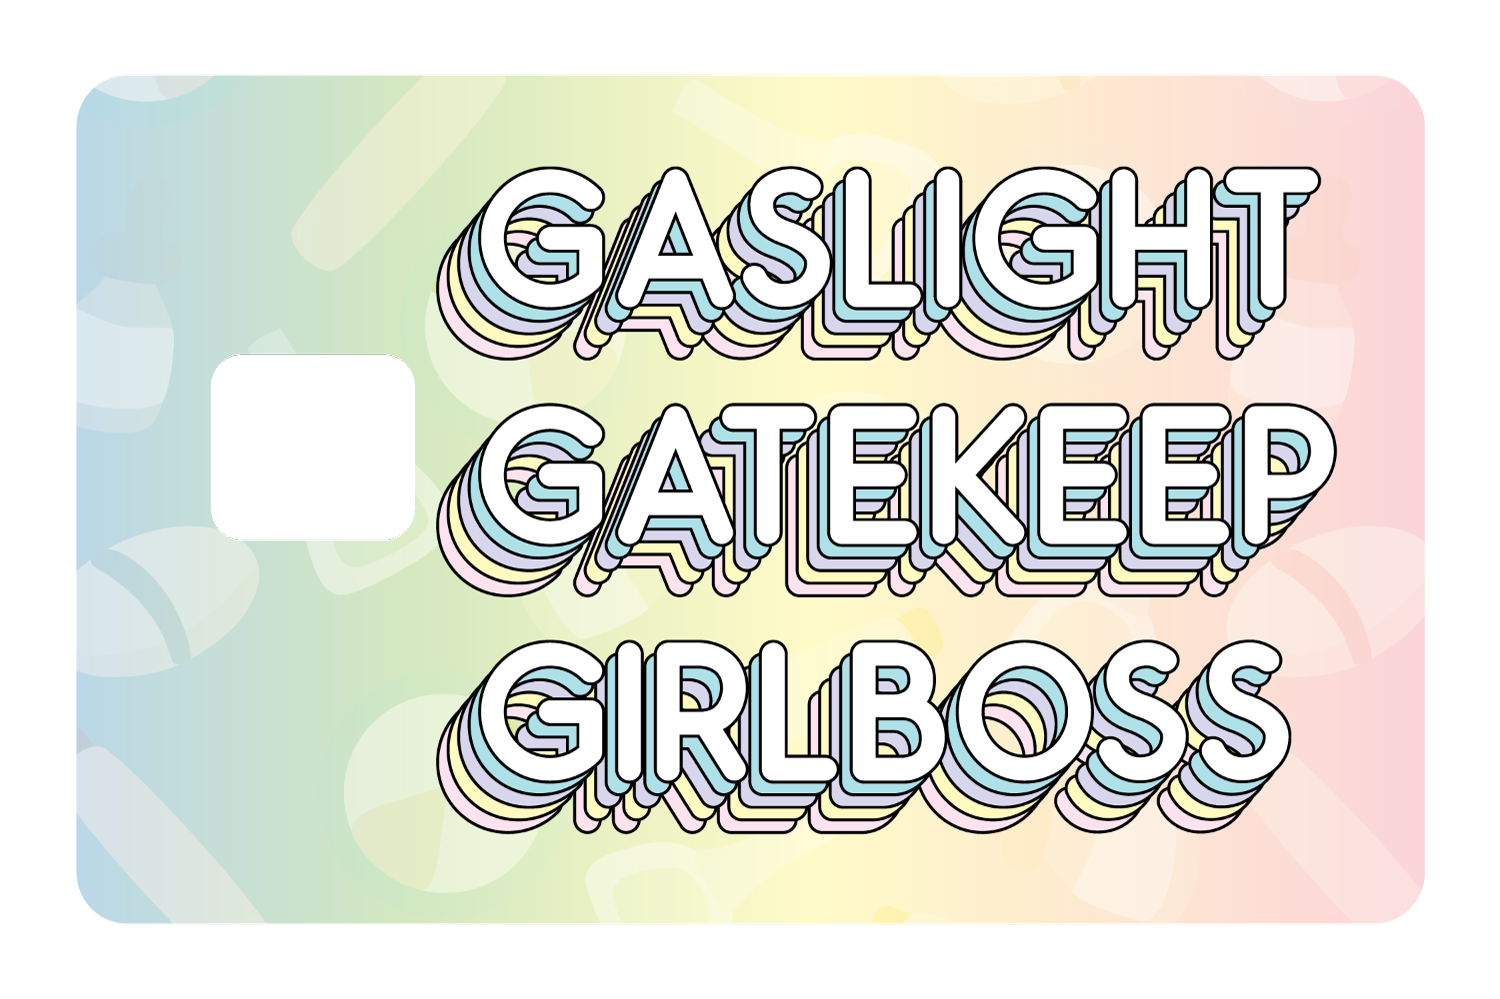 Gaslight Gatekeep Girlboss